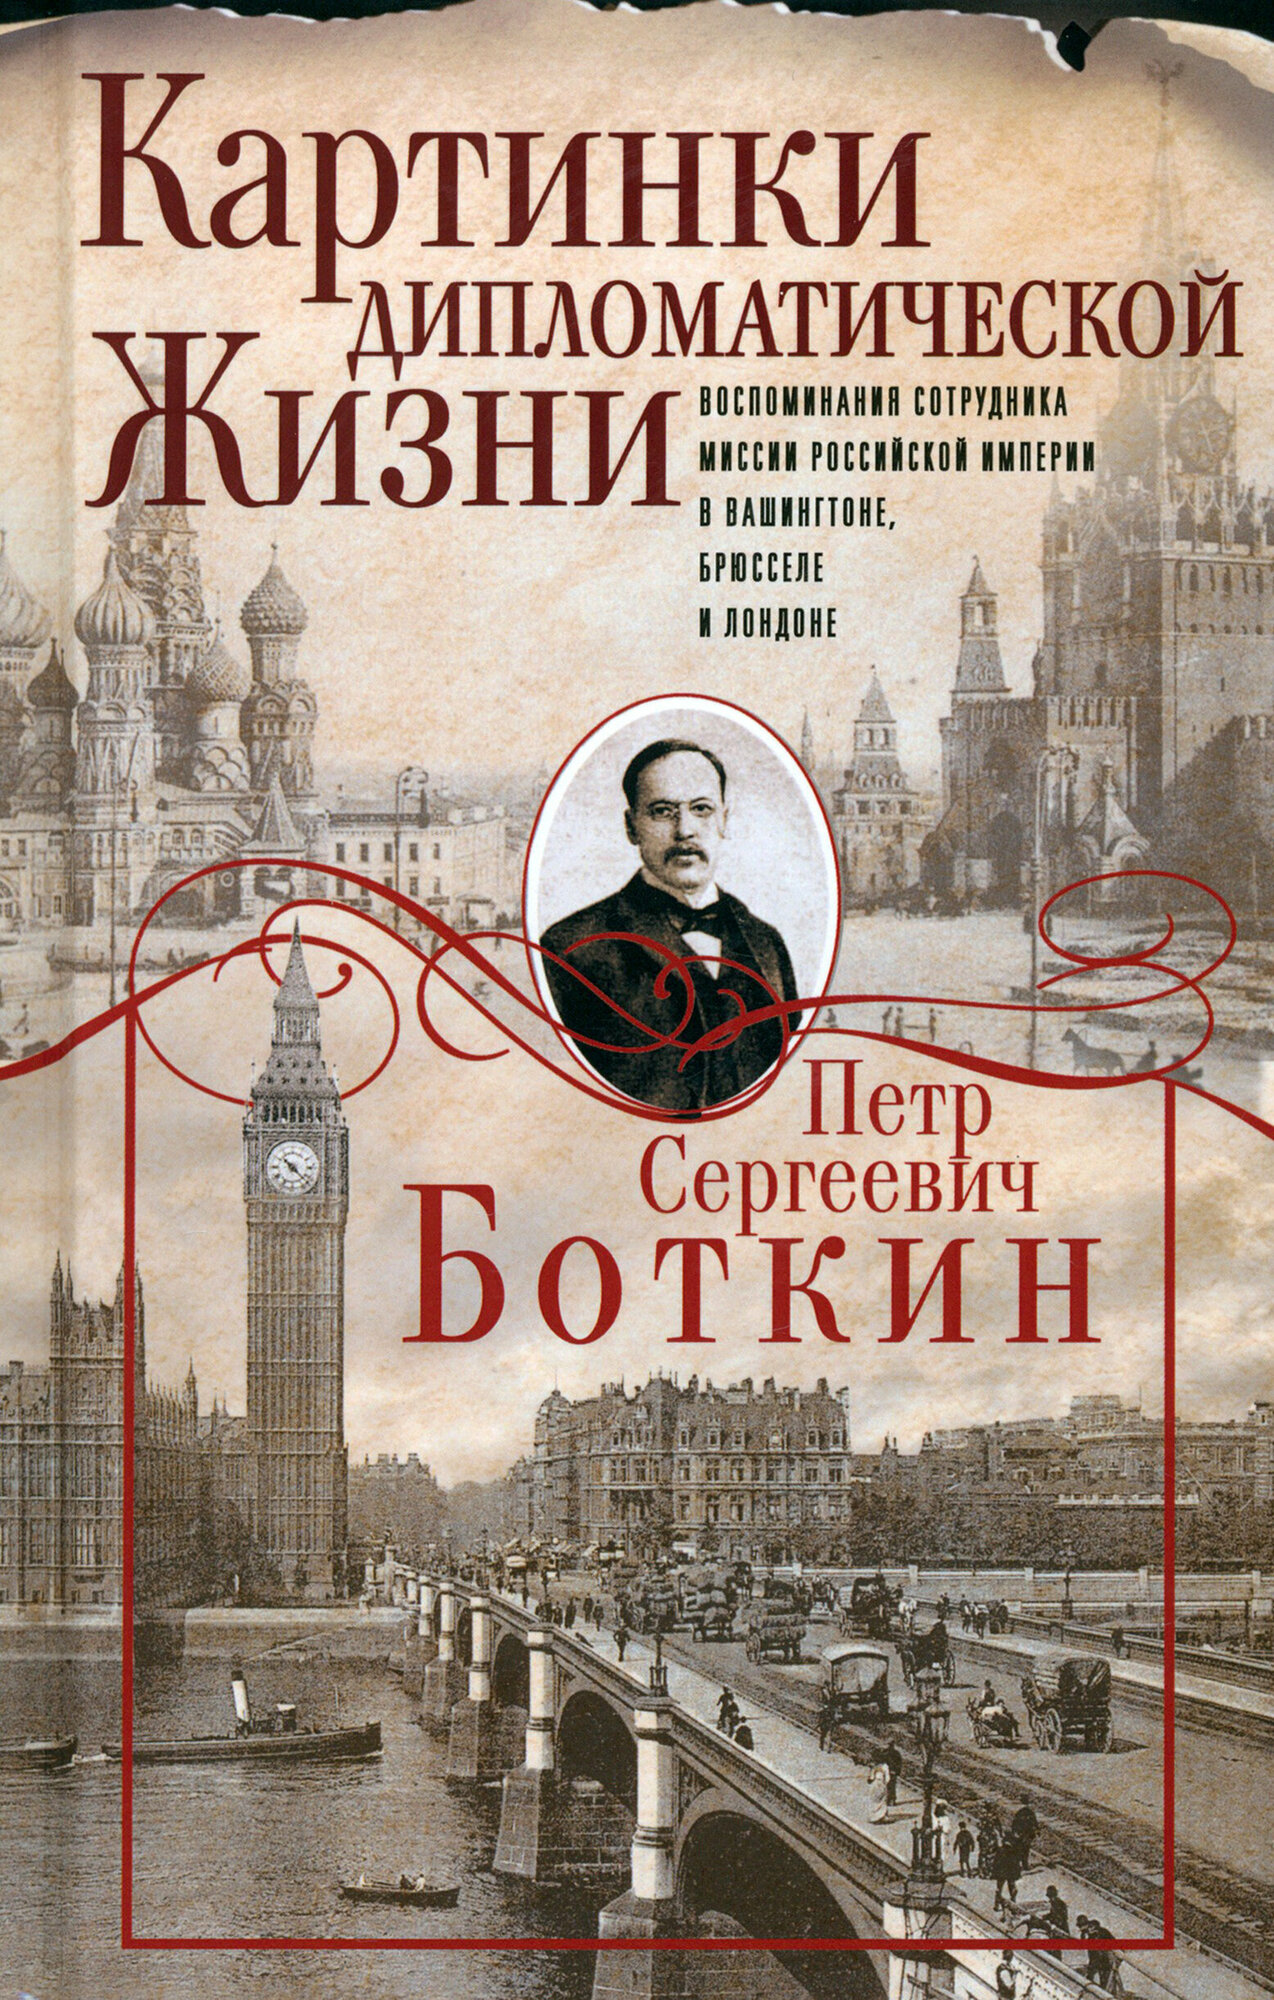 Картинки дипломатической жизни. Воспоминания сотрудника миссии Российской империи в Ваши